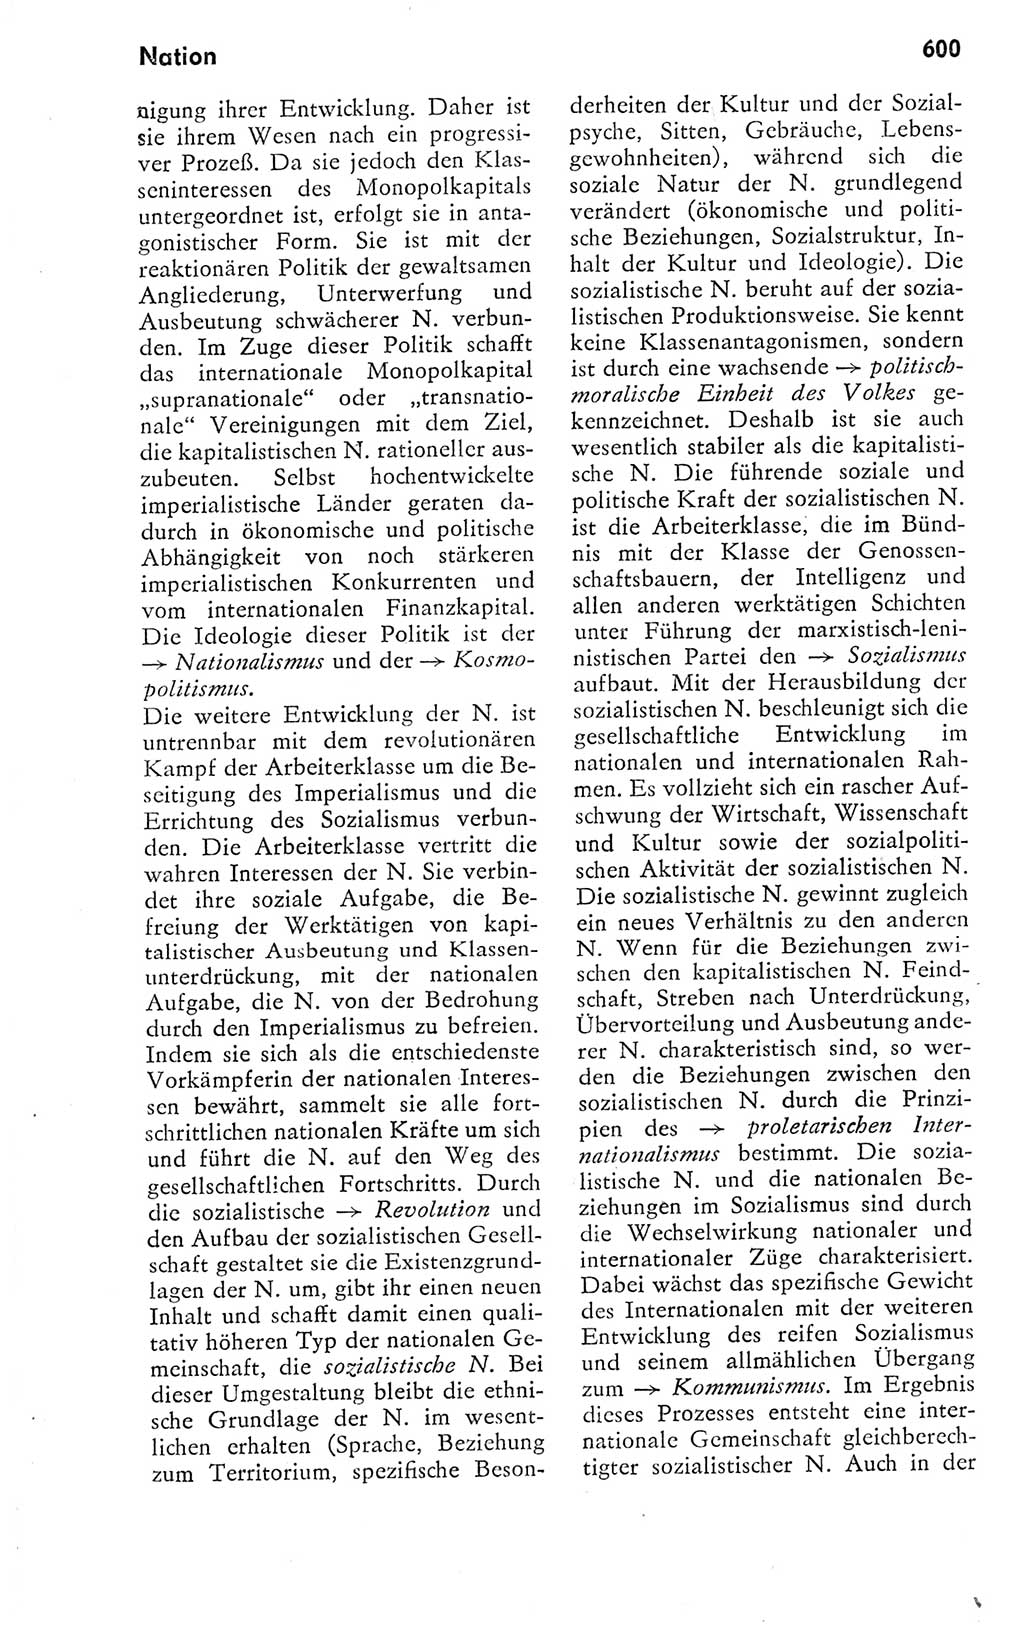 Kleines politisches Wörterbuch [Deutsche Demokratische Republik (DDR)] 1978, Seite 600 (Kl. pol. Wb. DDR 1978, S. 600)